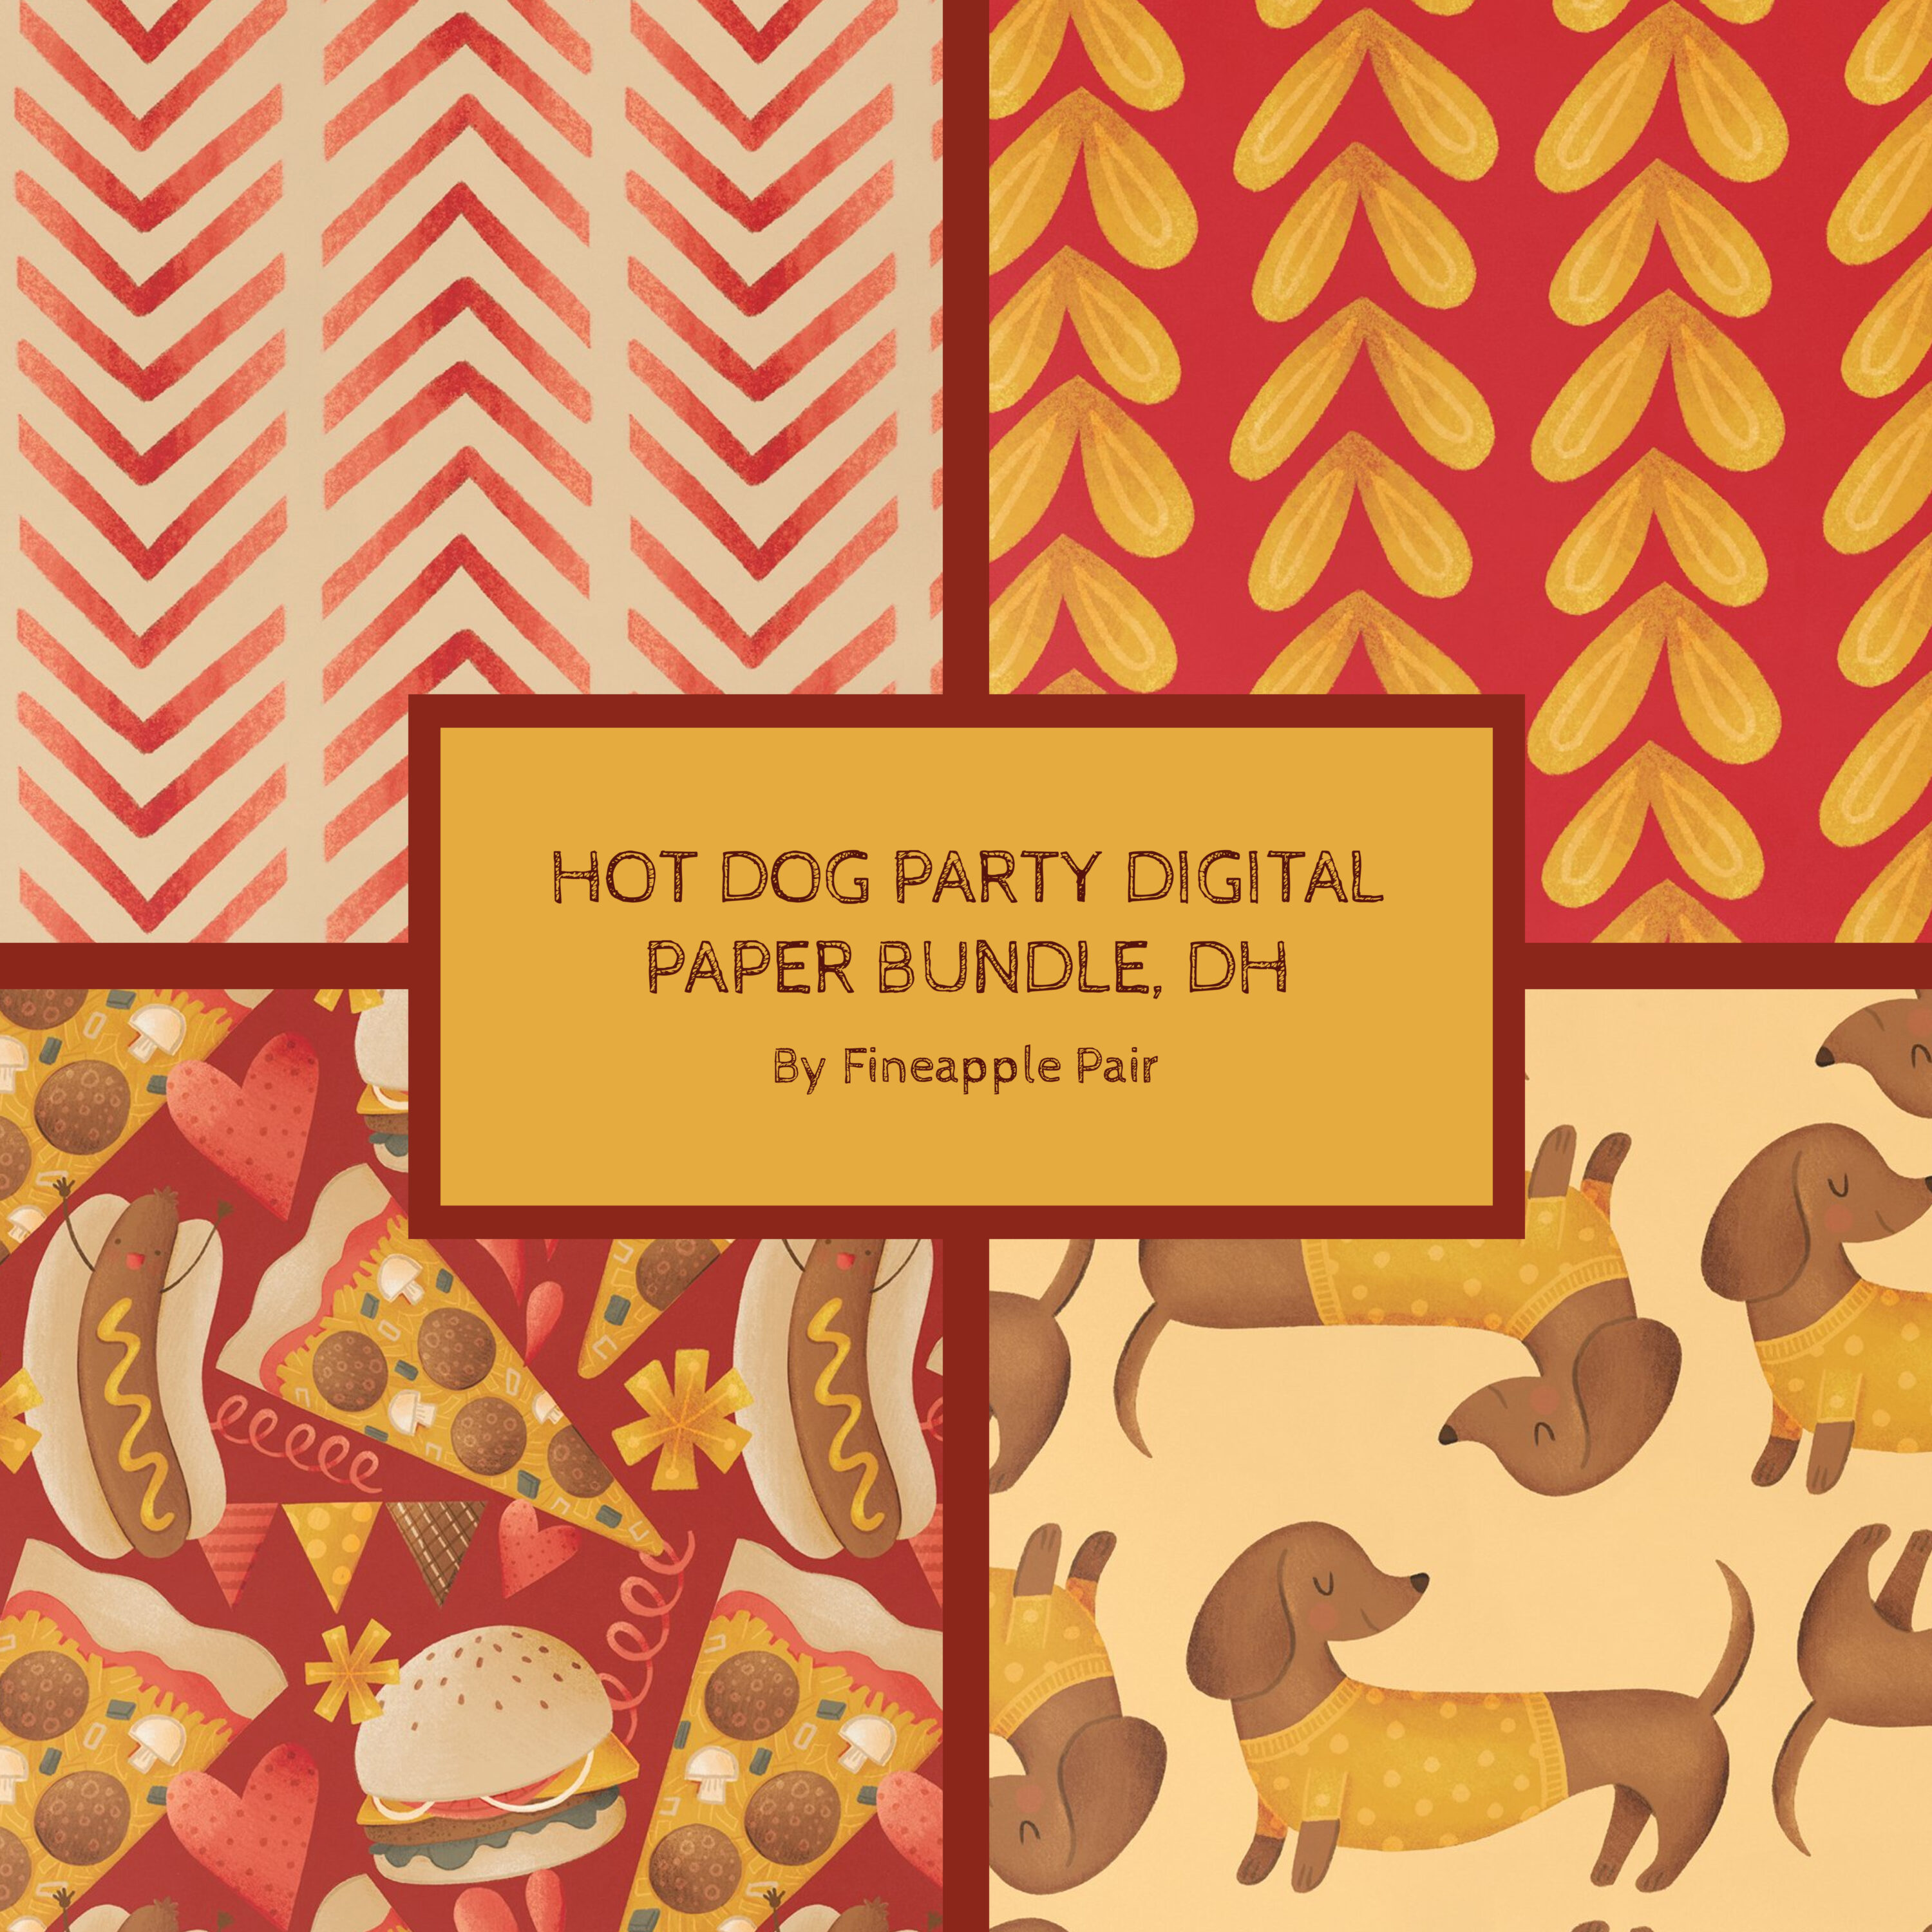 Prints of hot dog party digital paper bundle.